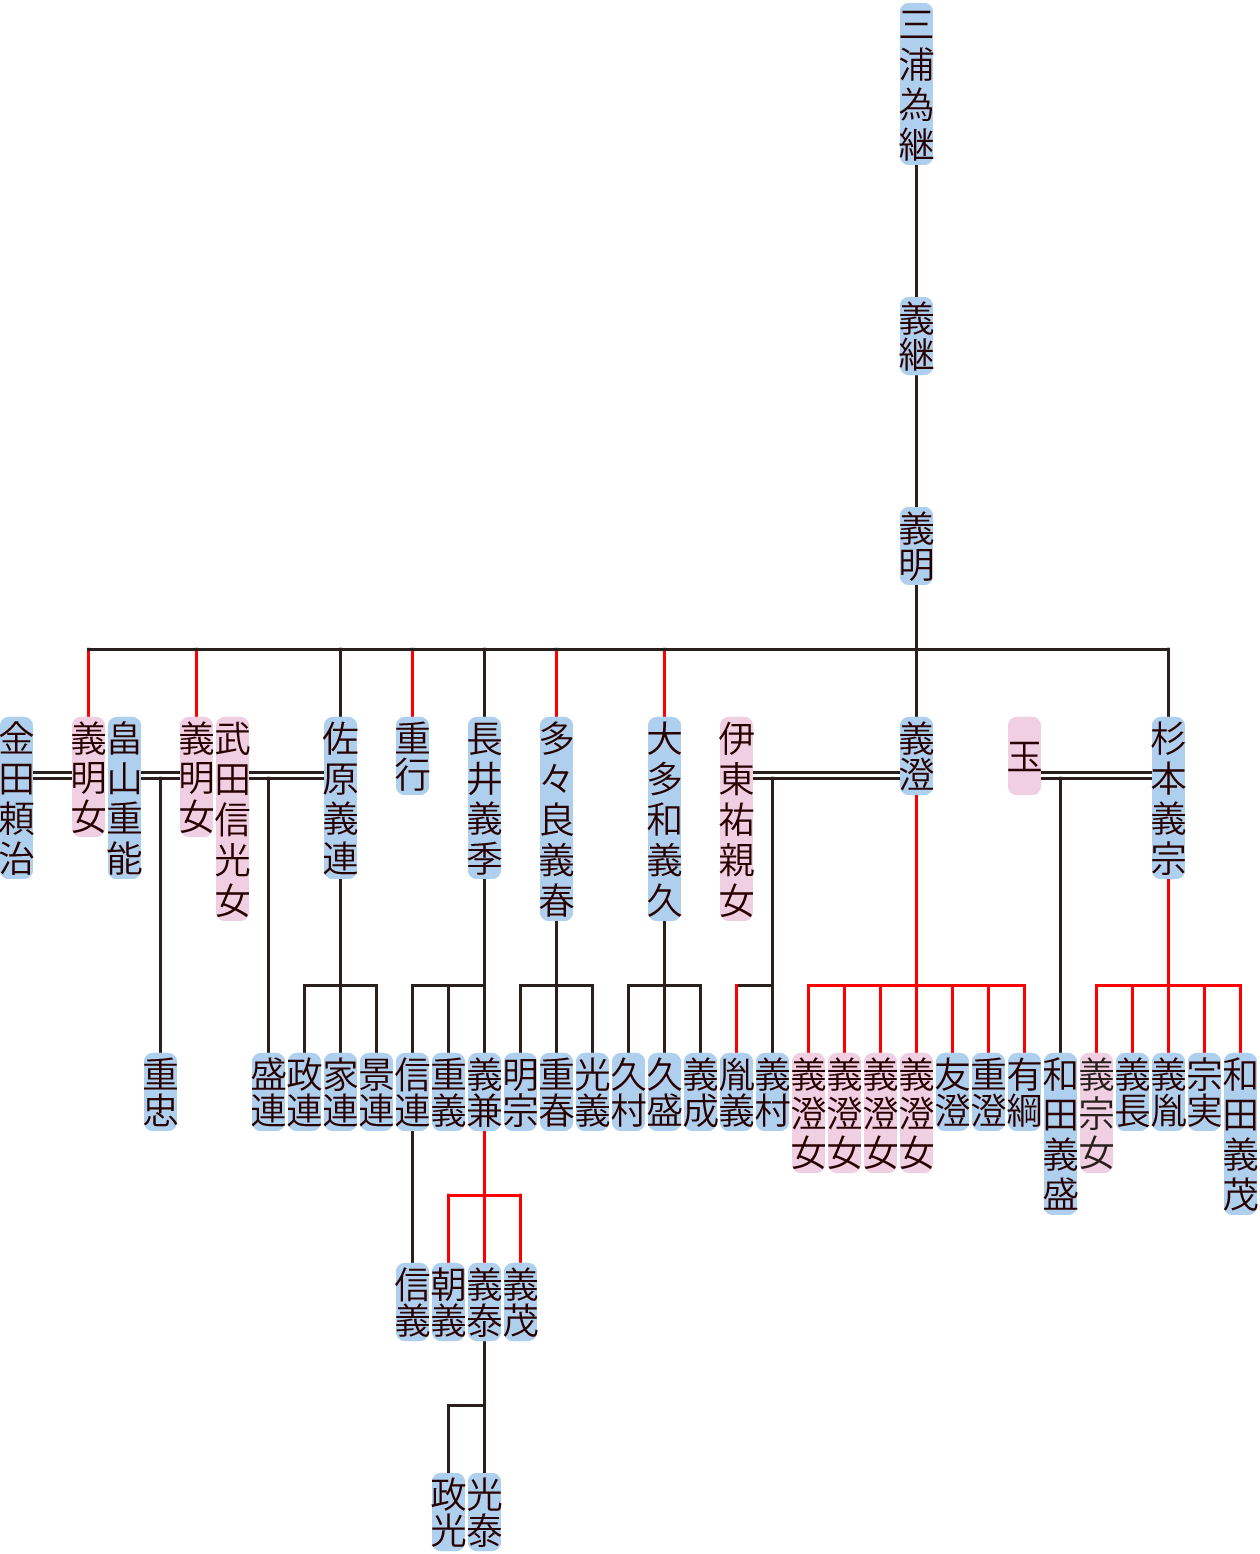 三浦義明の系図